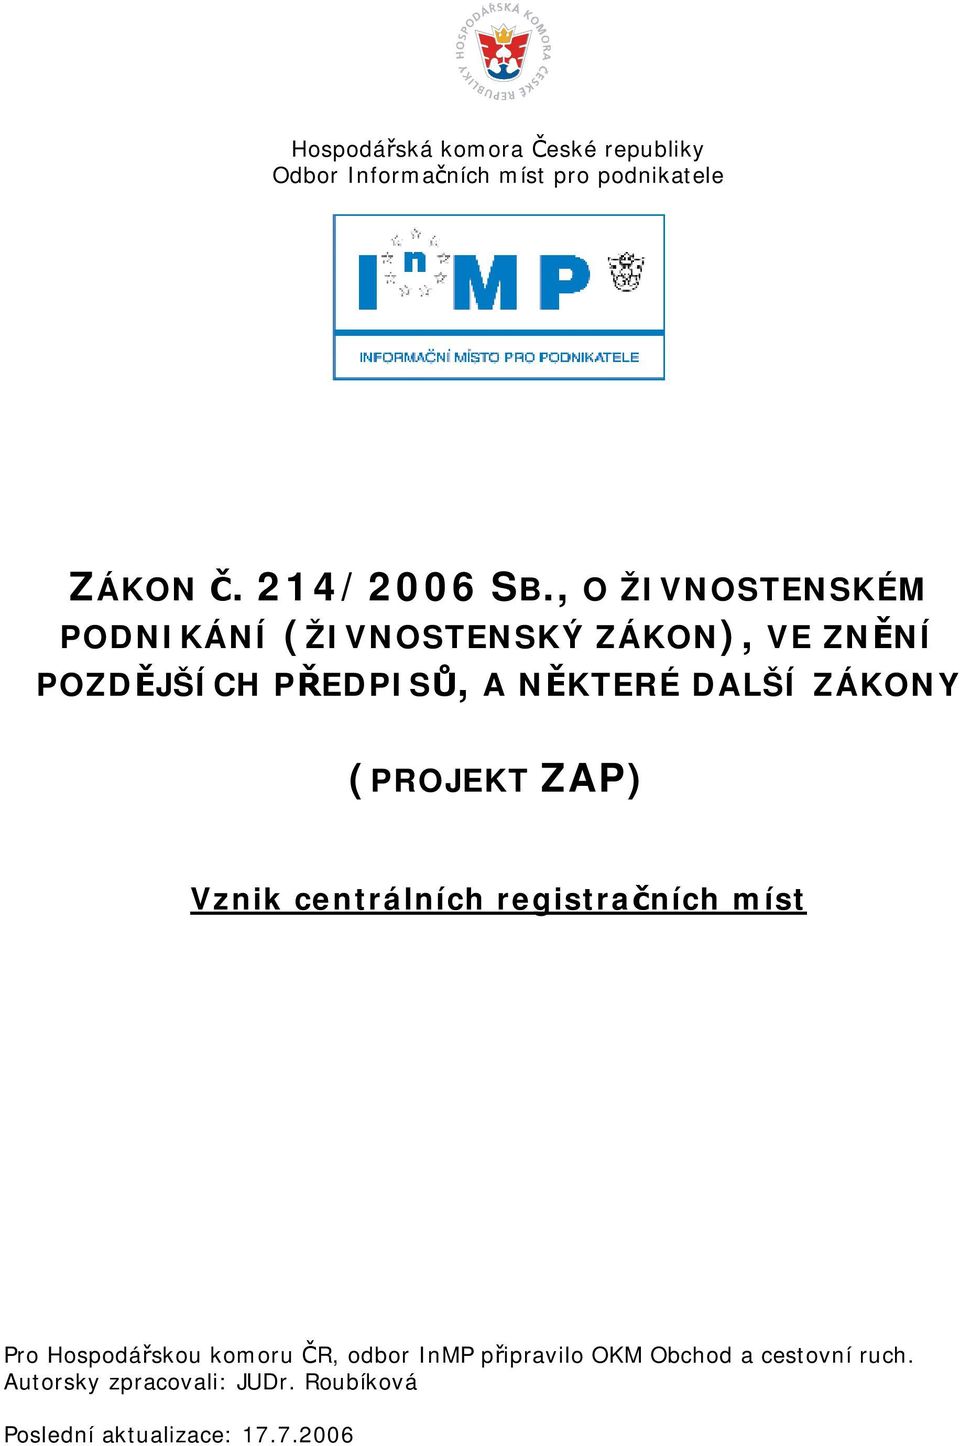 ZÁKONY (PROJEKT ZAP) Vznik centrálních registračních míst Pro Hospodářskou komoru ČR, odbor InMP